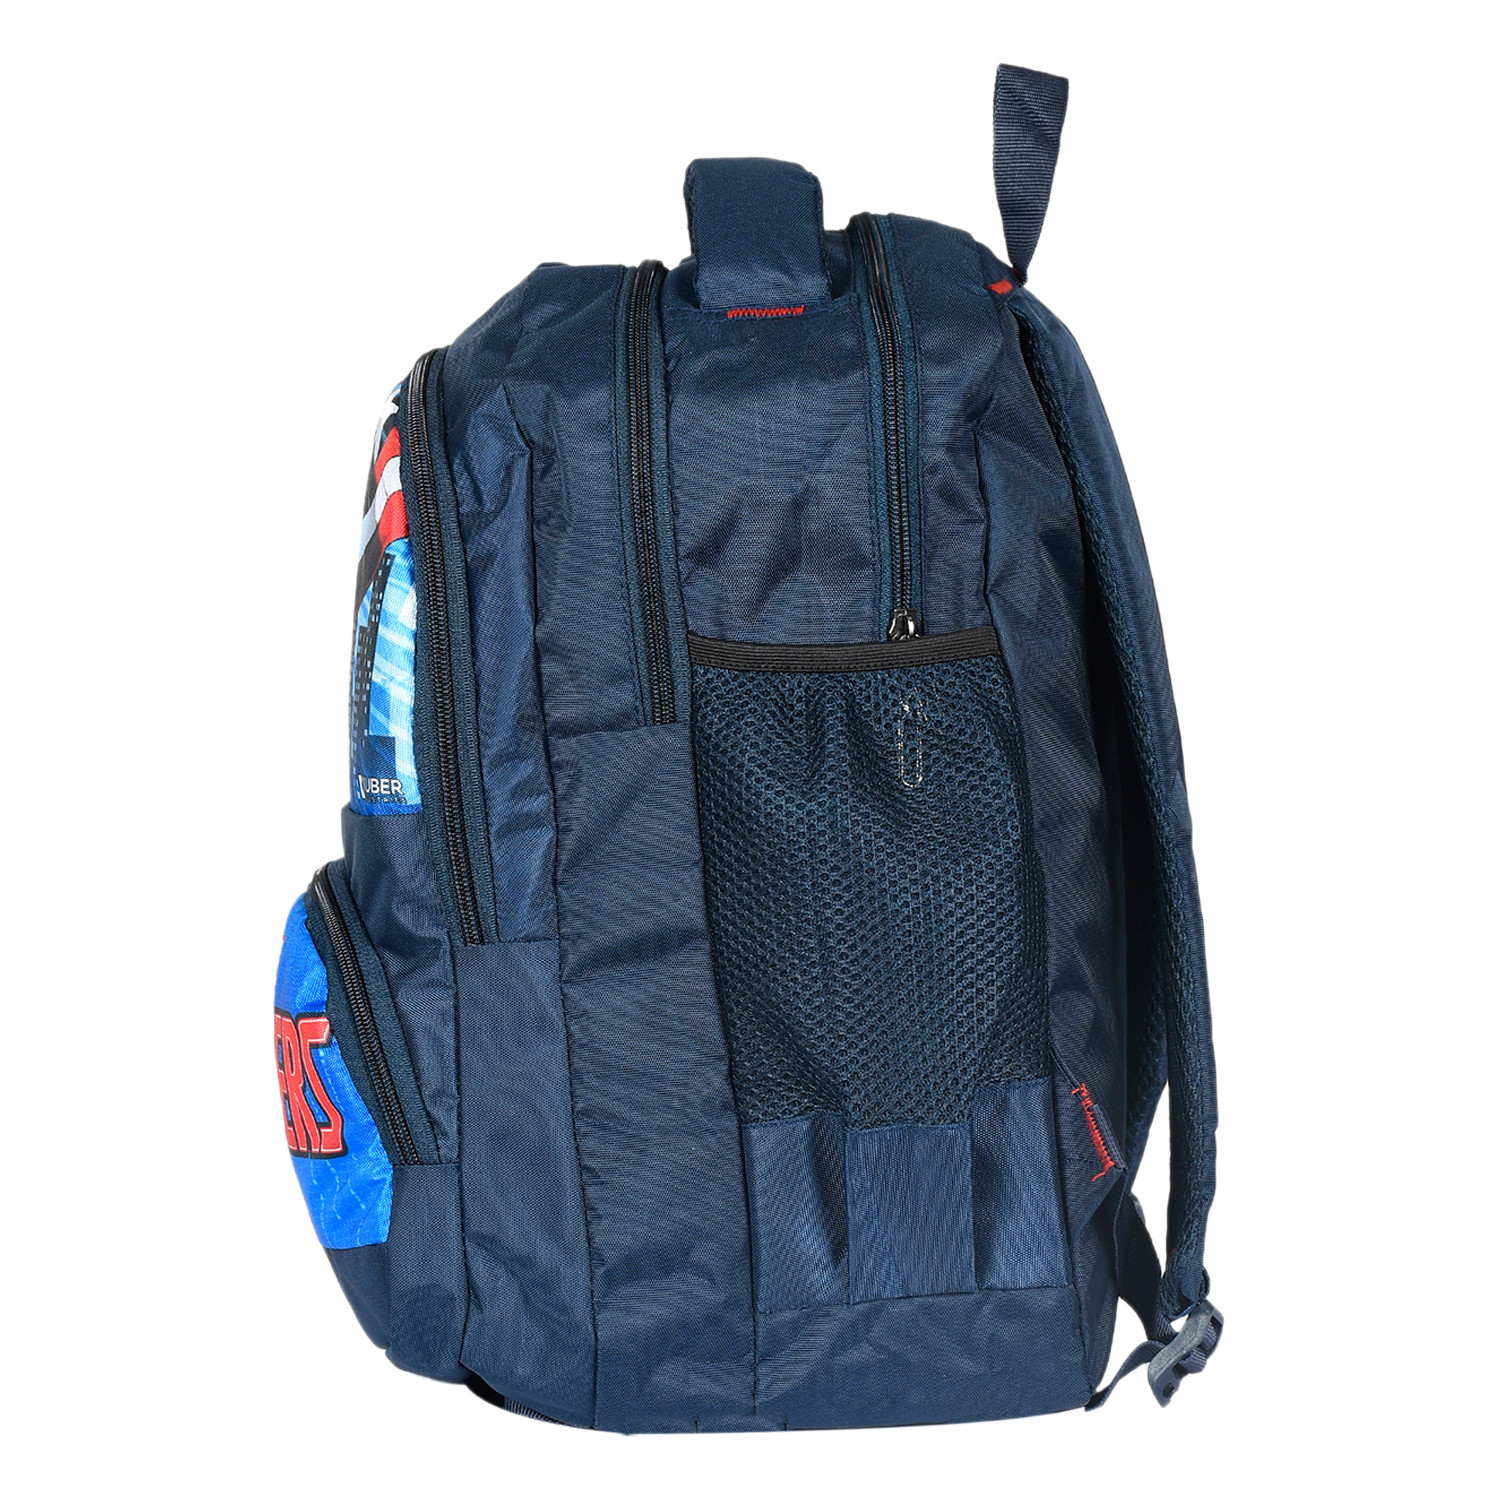 Kuber Industries Marvel Captain America Print School Bag for Kids|Stylish Backpacks for Kids|Rexine Waterproof Shoulder Straps Bag (Blue)